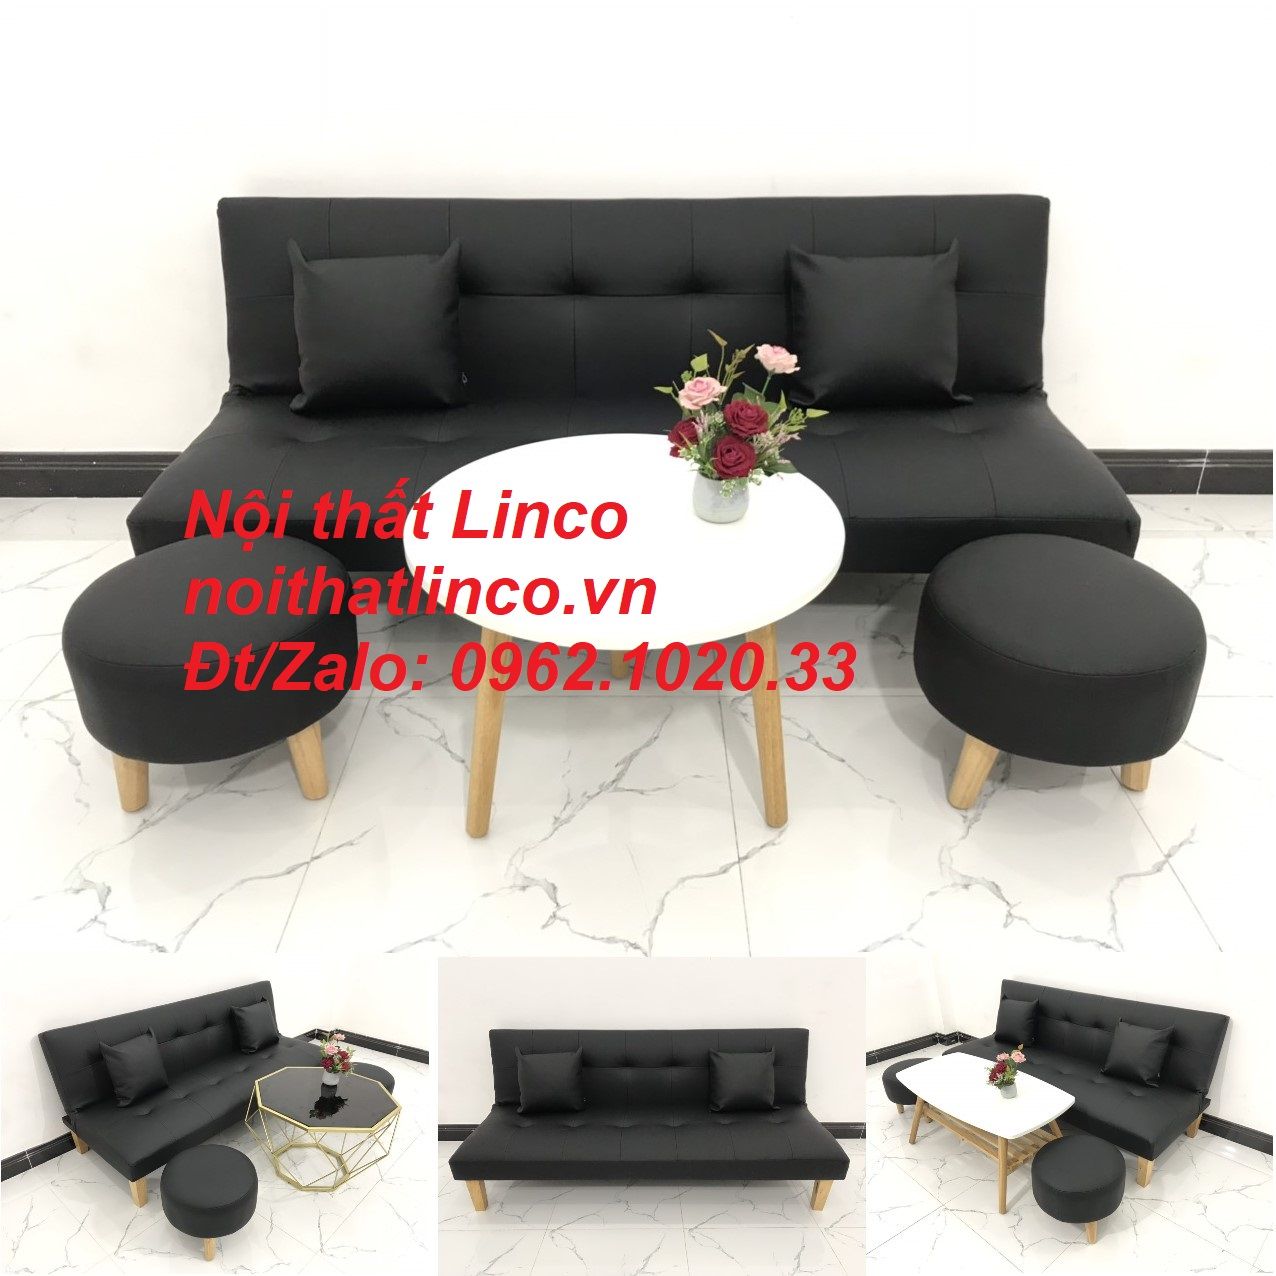 Bộ bàn ghế sofa bed, sofa giường simili đen giá rẻ Nội thất Linco ...